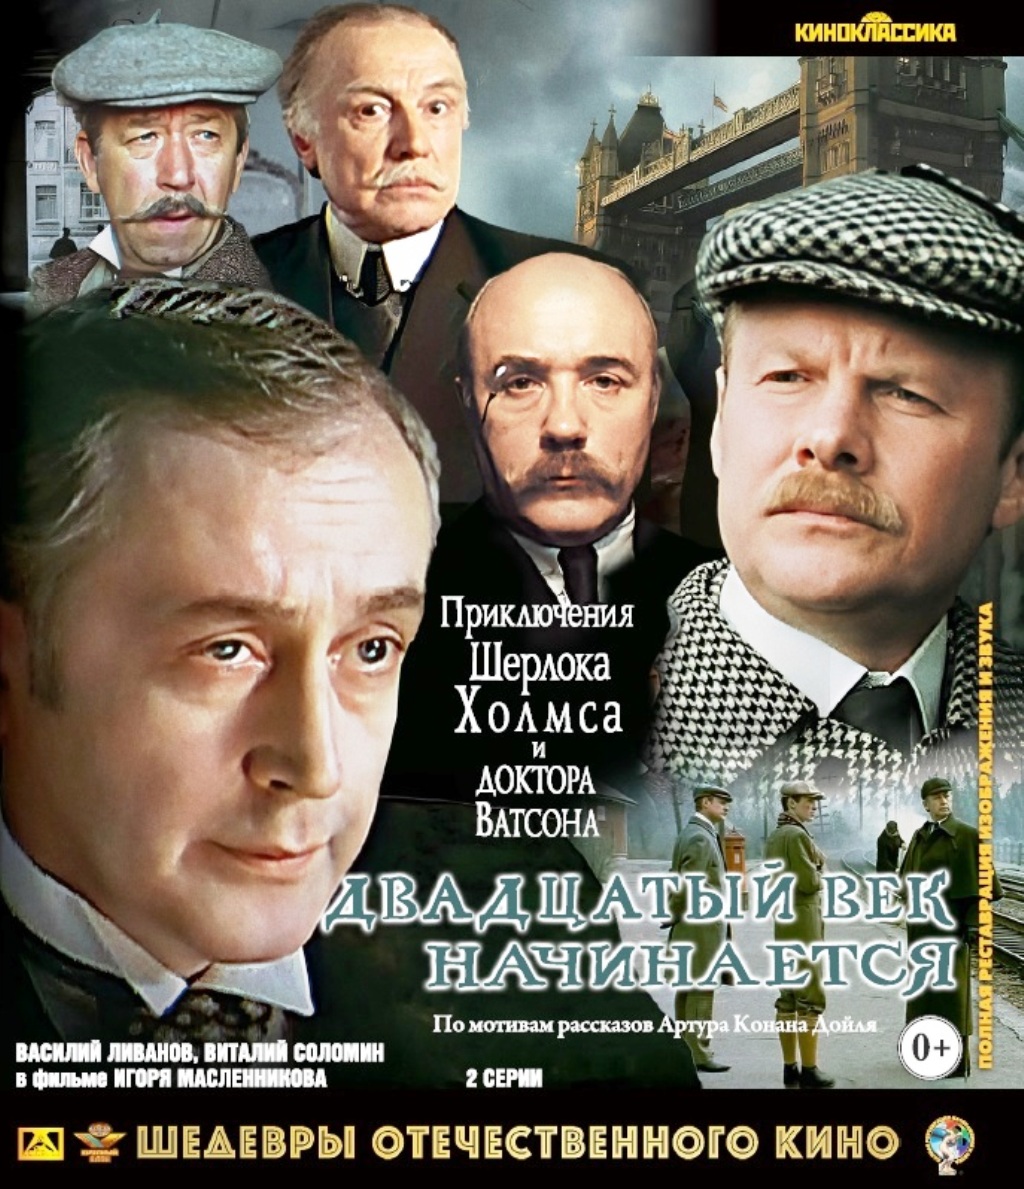 Приключения Шерлока Холмса и доктора Ватсона: ХХ век начинается (Blu-Ray)